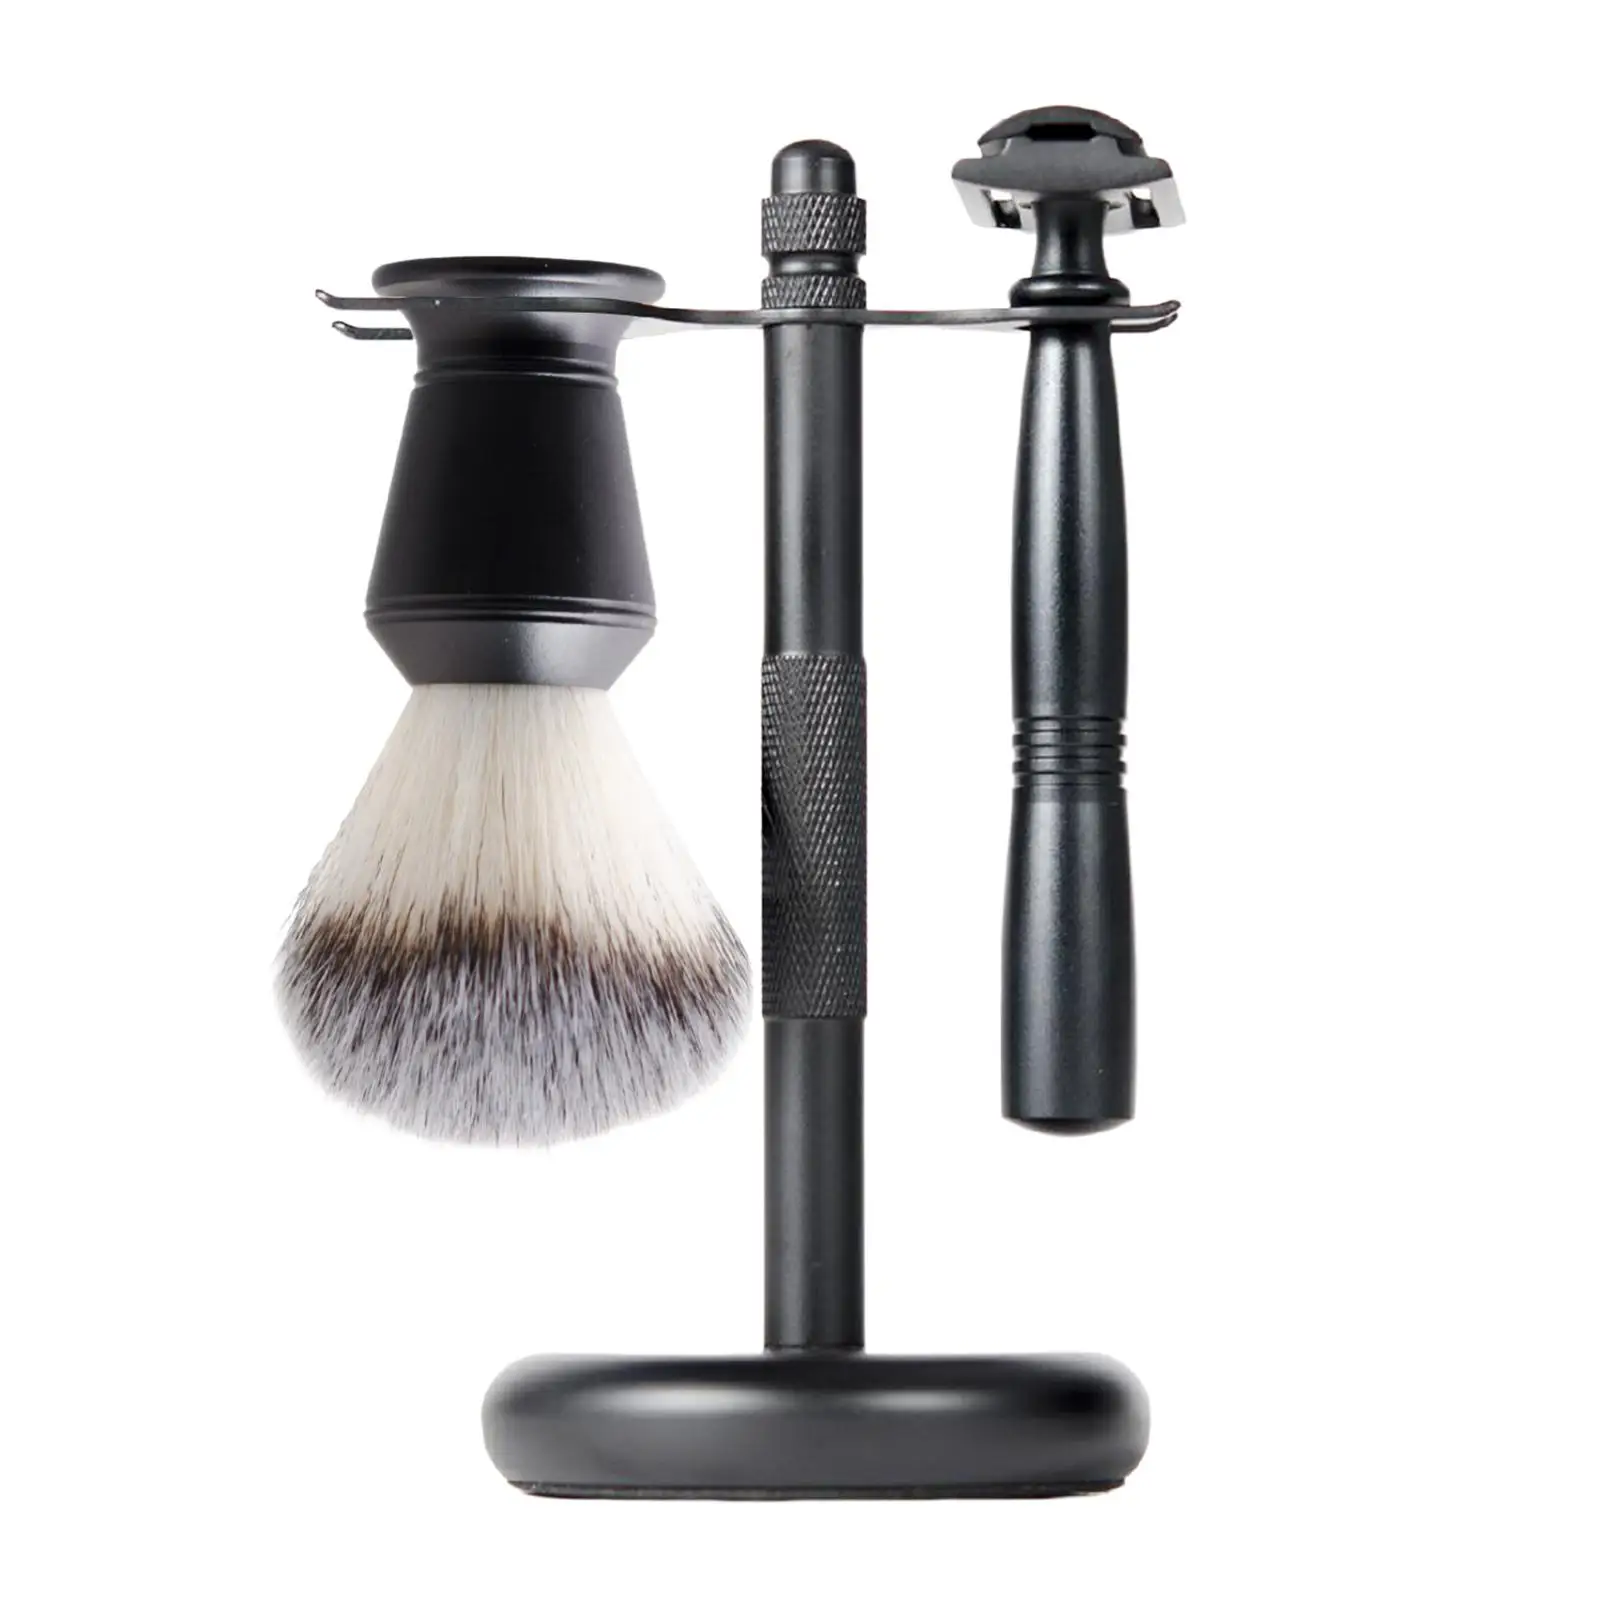 3x Mens Shaving Kit Black Luxury Elegant Razor+ Stand Holder + Shaving Brush